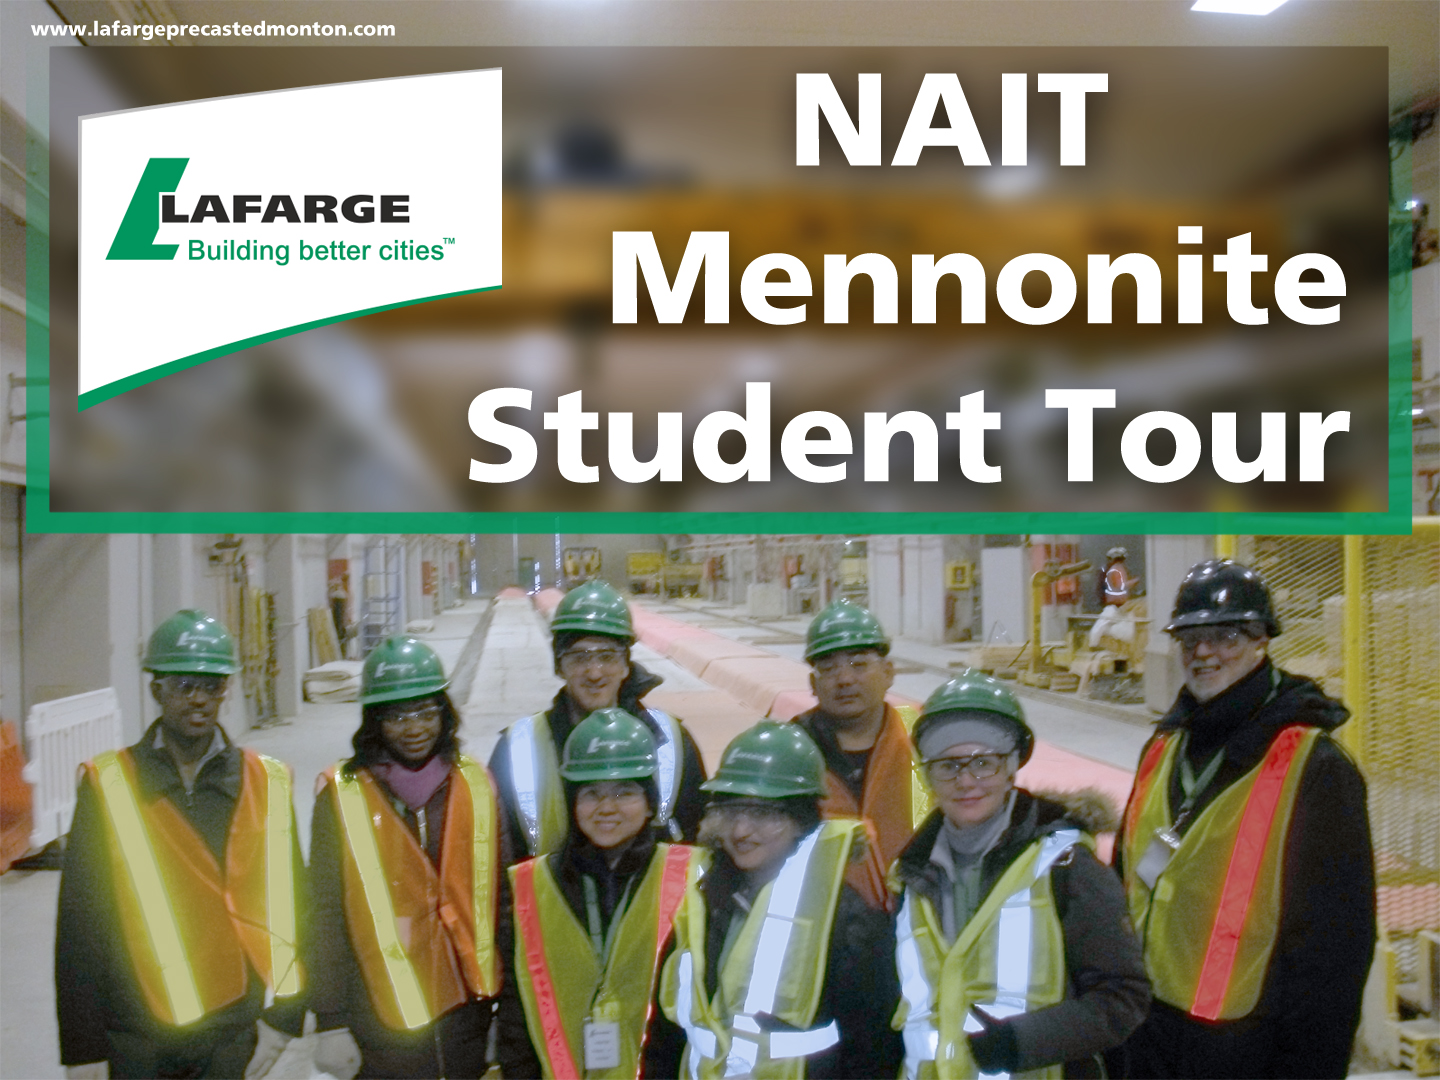 NAIT students Mennonite tour precast concrete Lafarge precast edmonton